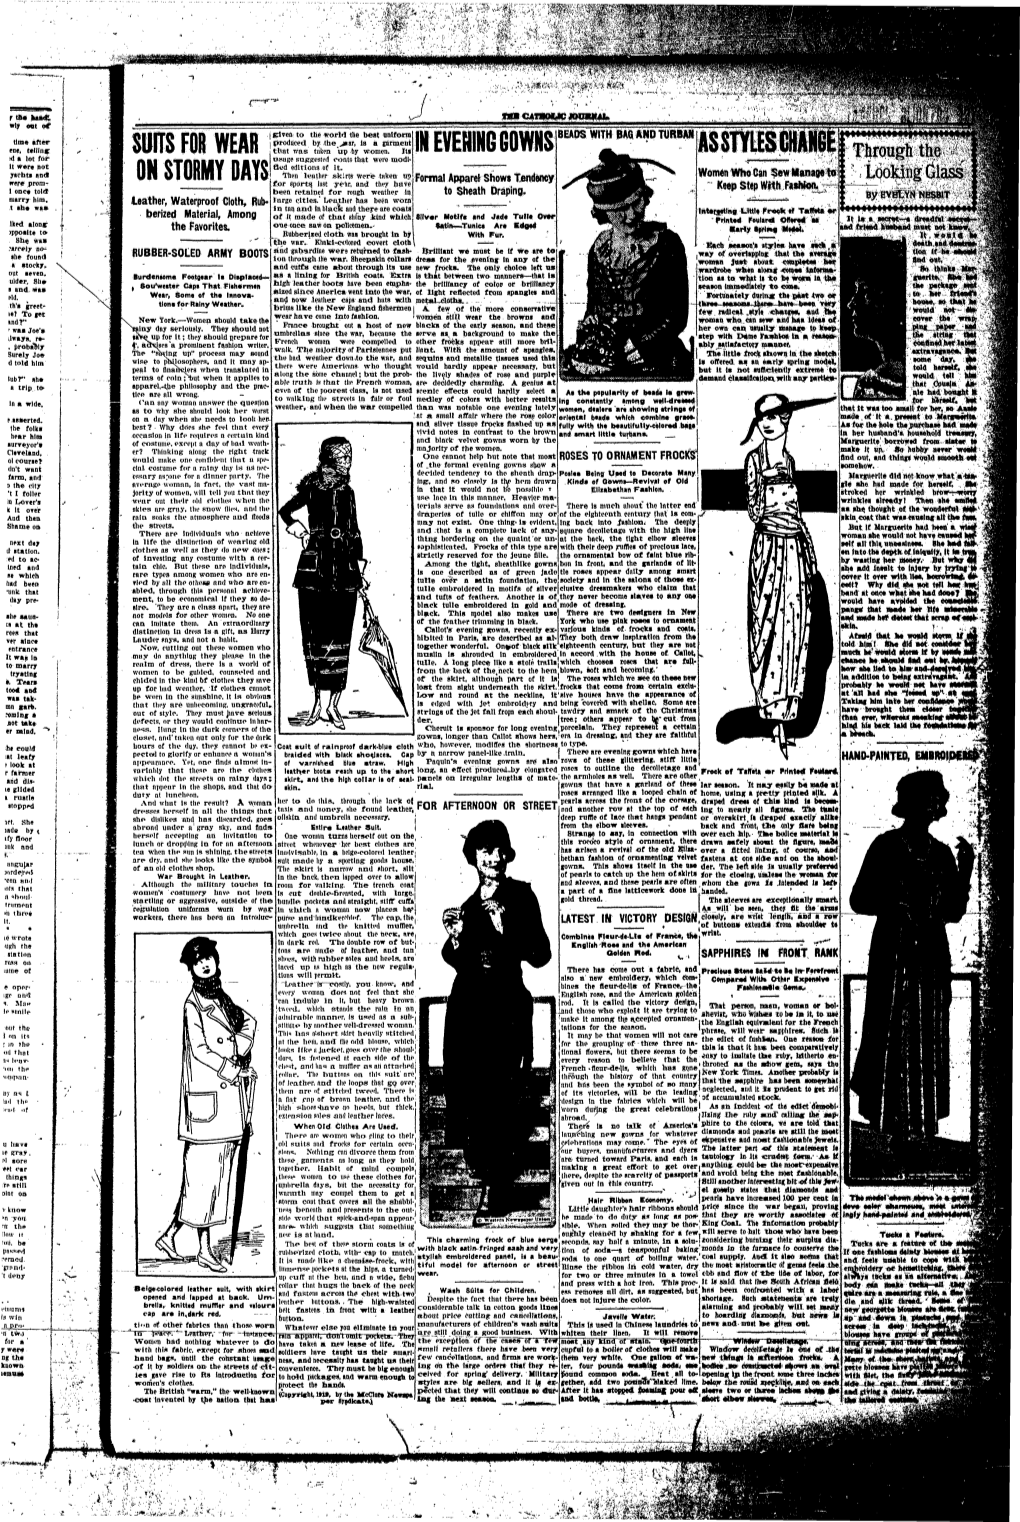 Catholic-Journal-1919-January-1922